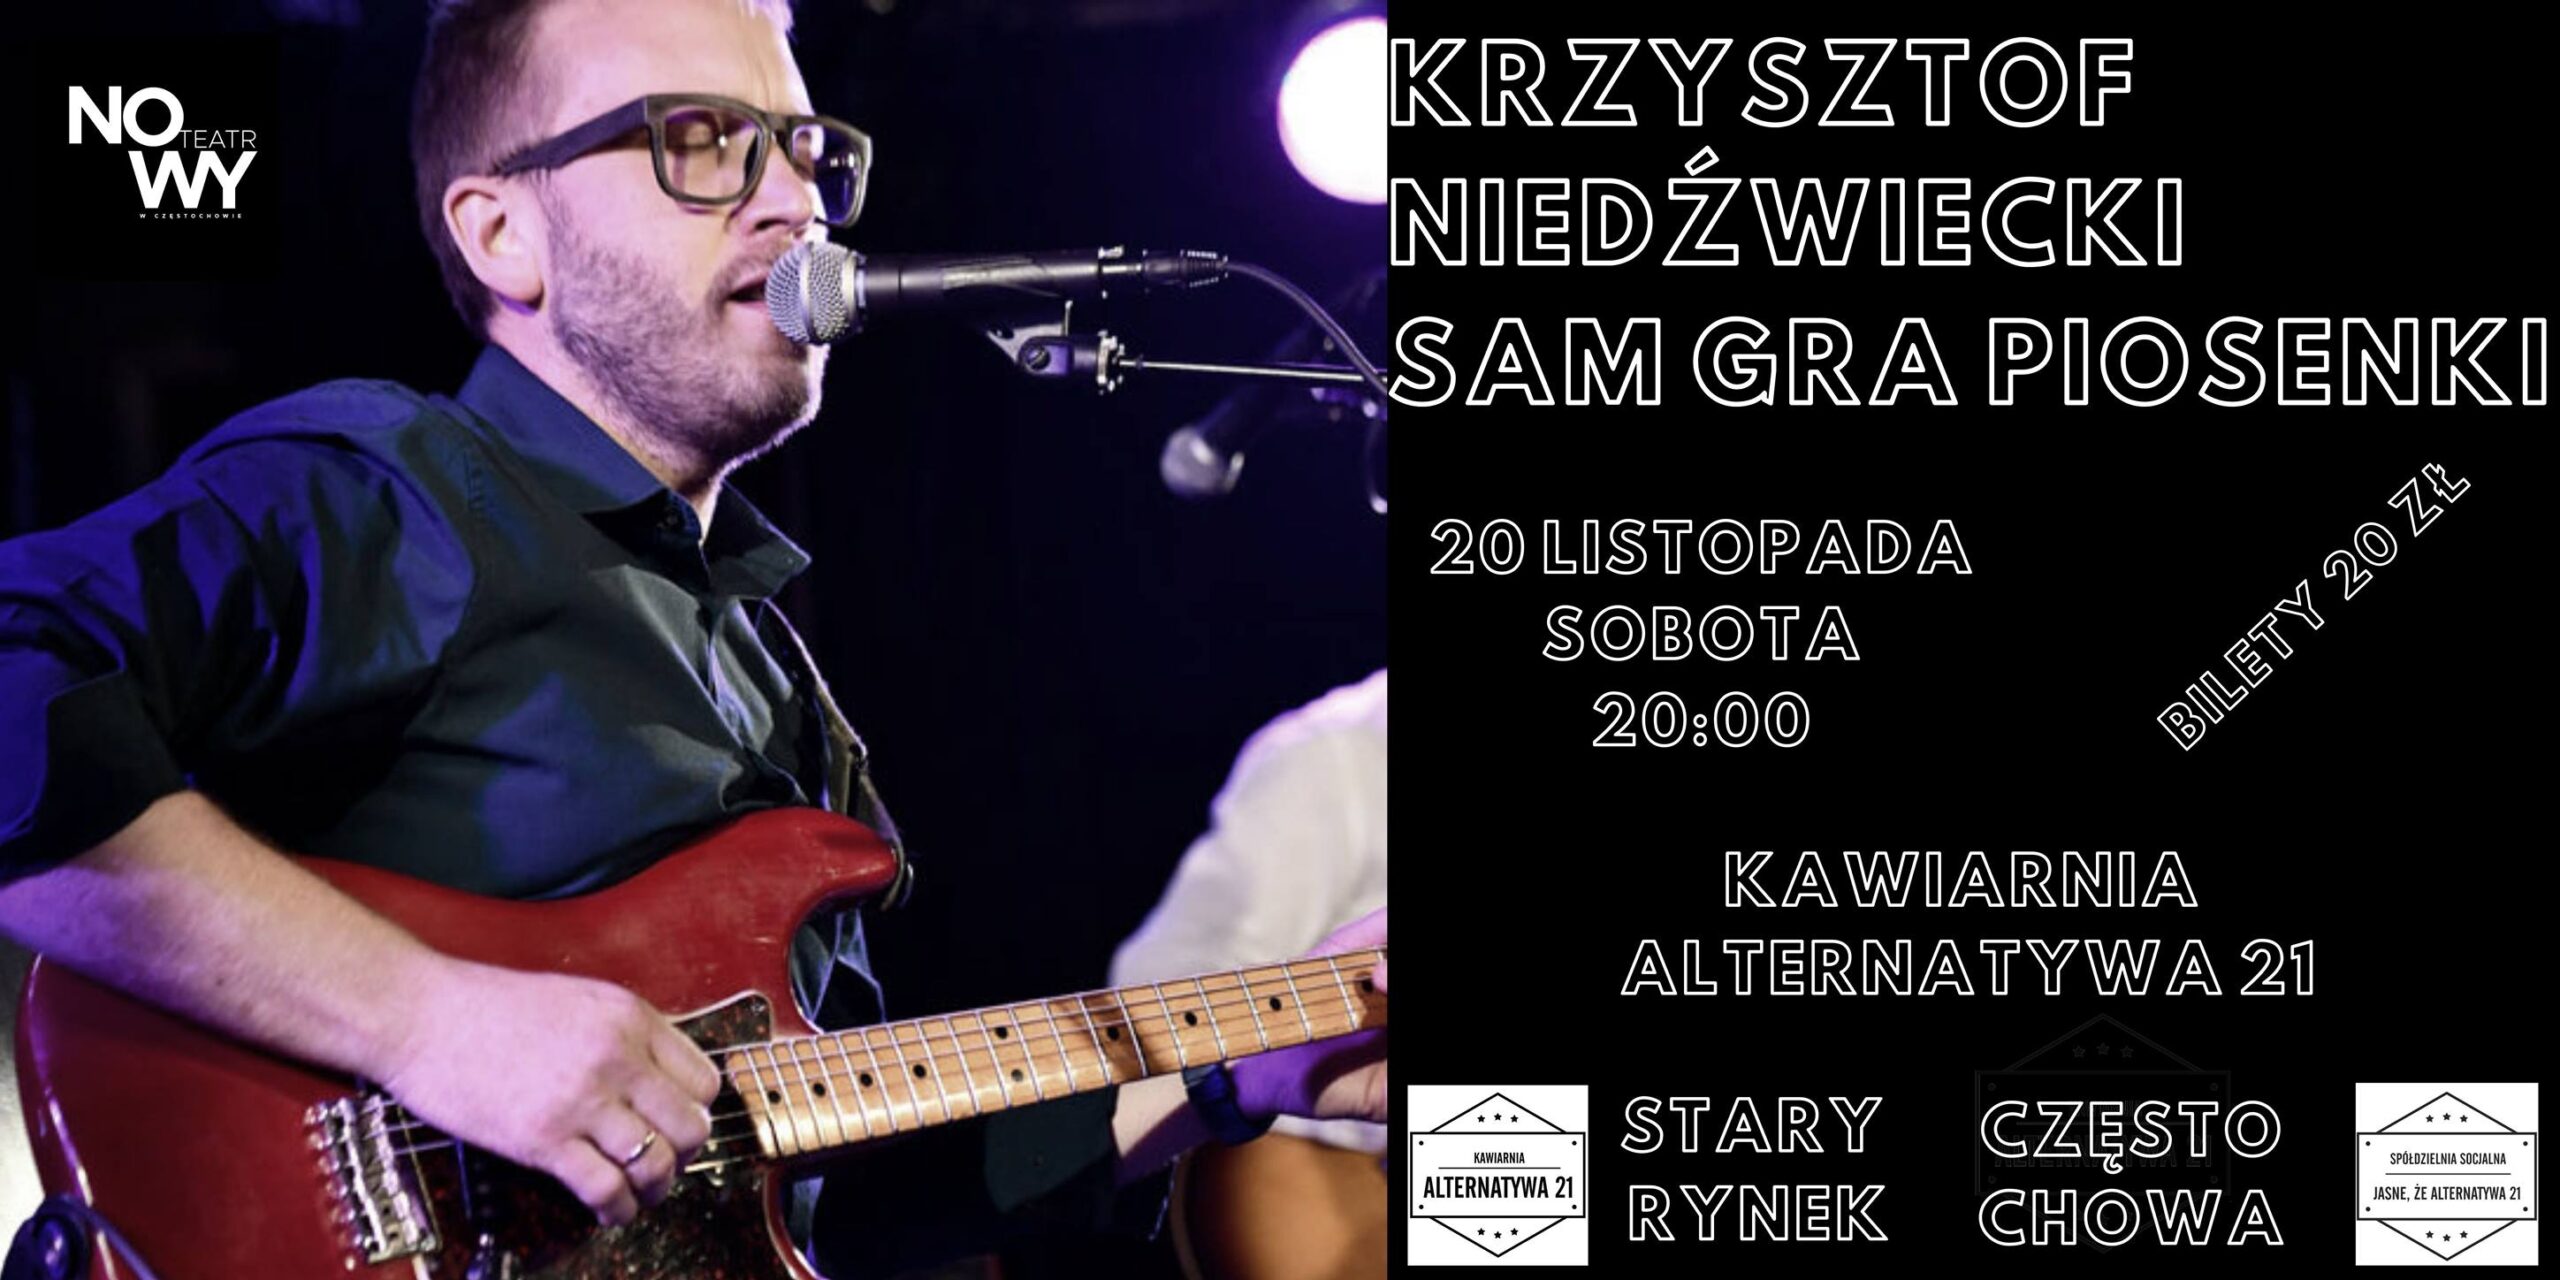 Krzysztof Niedźwiecki sam gra piosenki w częstochowskiej Alternatywie 21 1